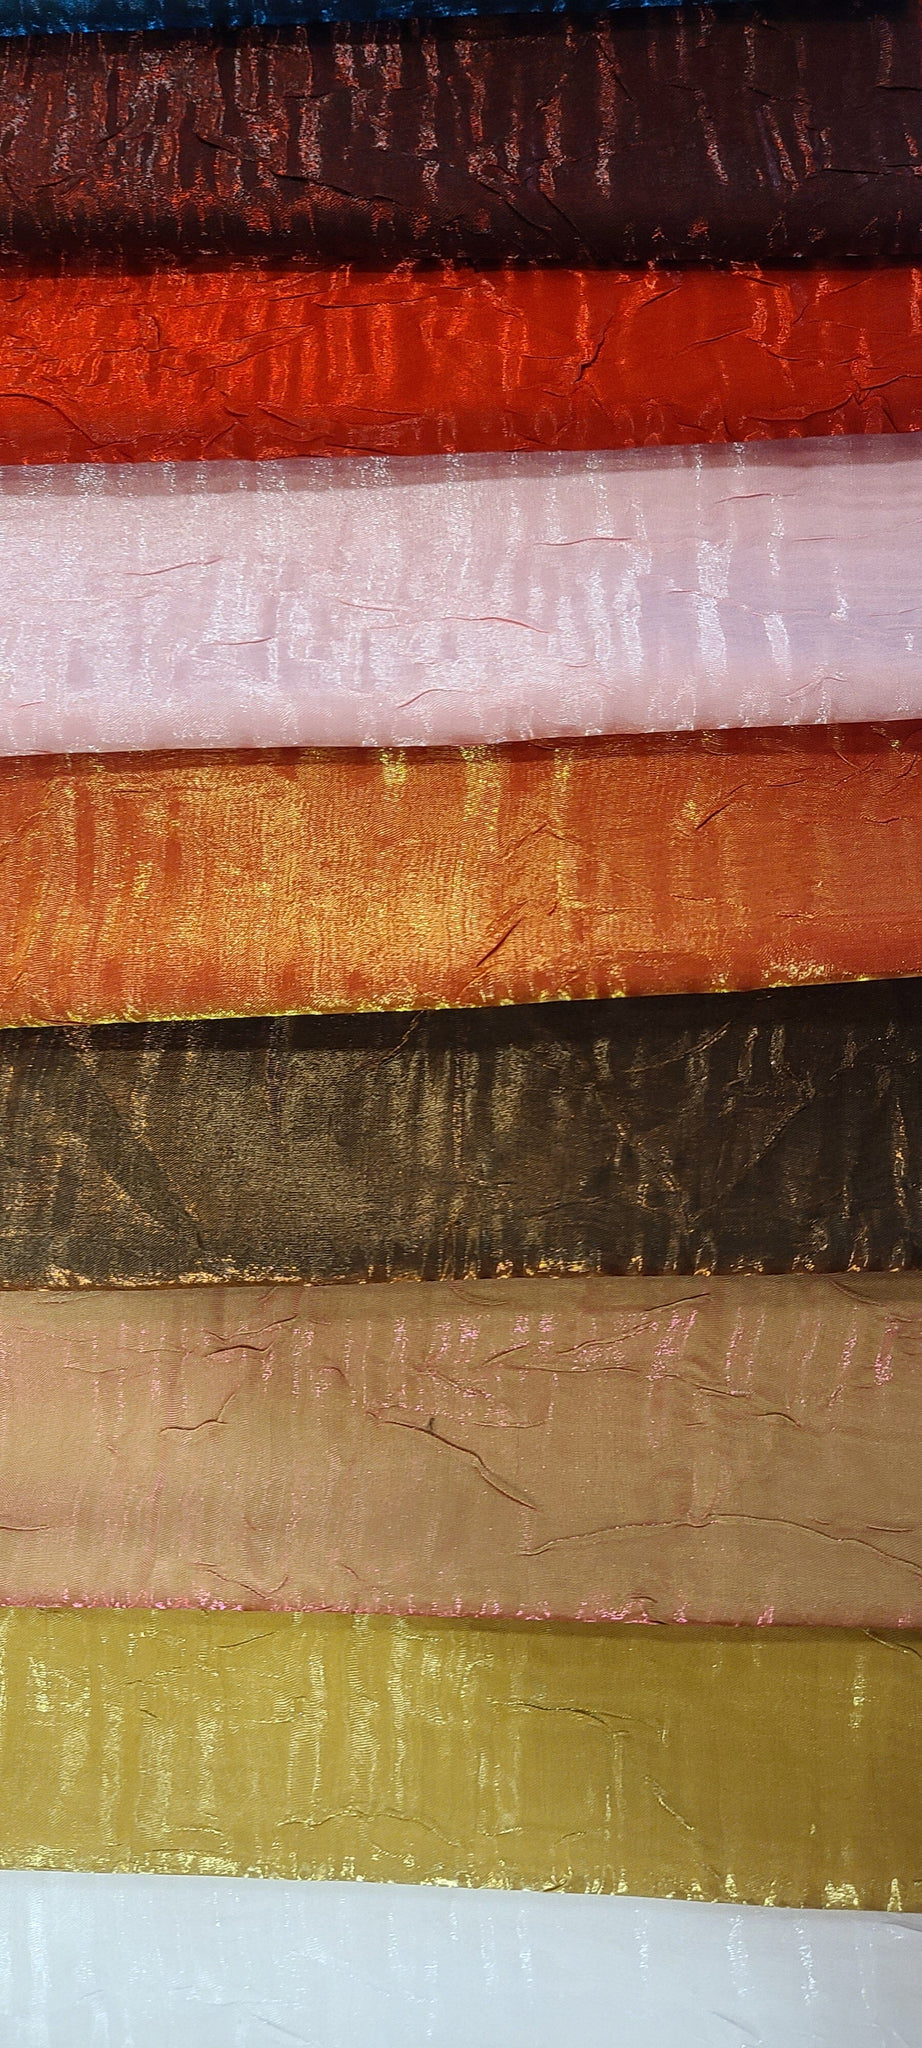 Shimmer Crushed Velvet Red Upholstery Fabric